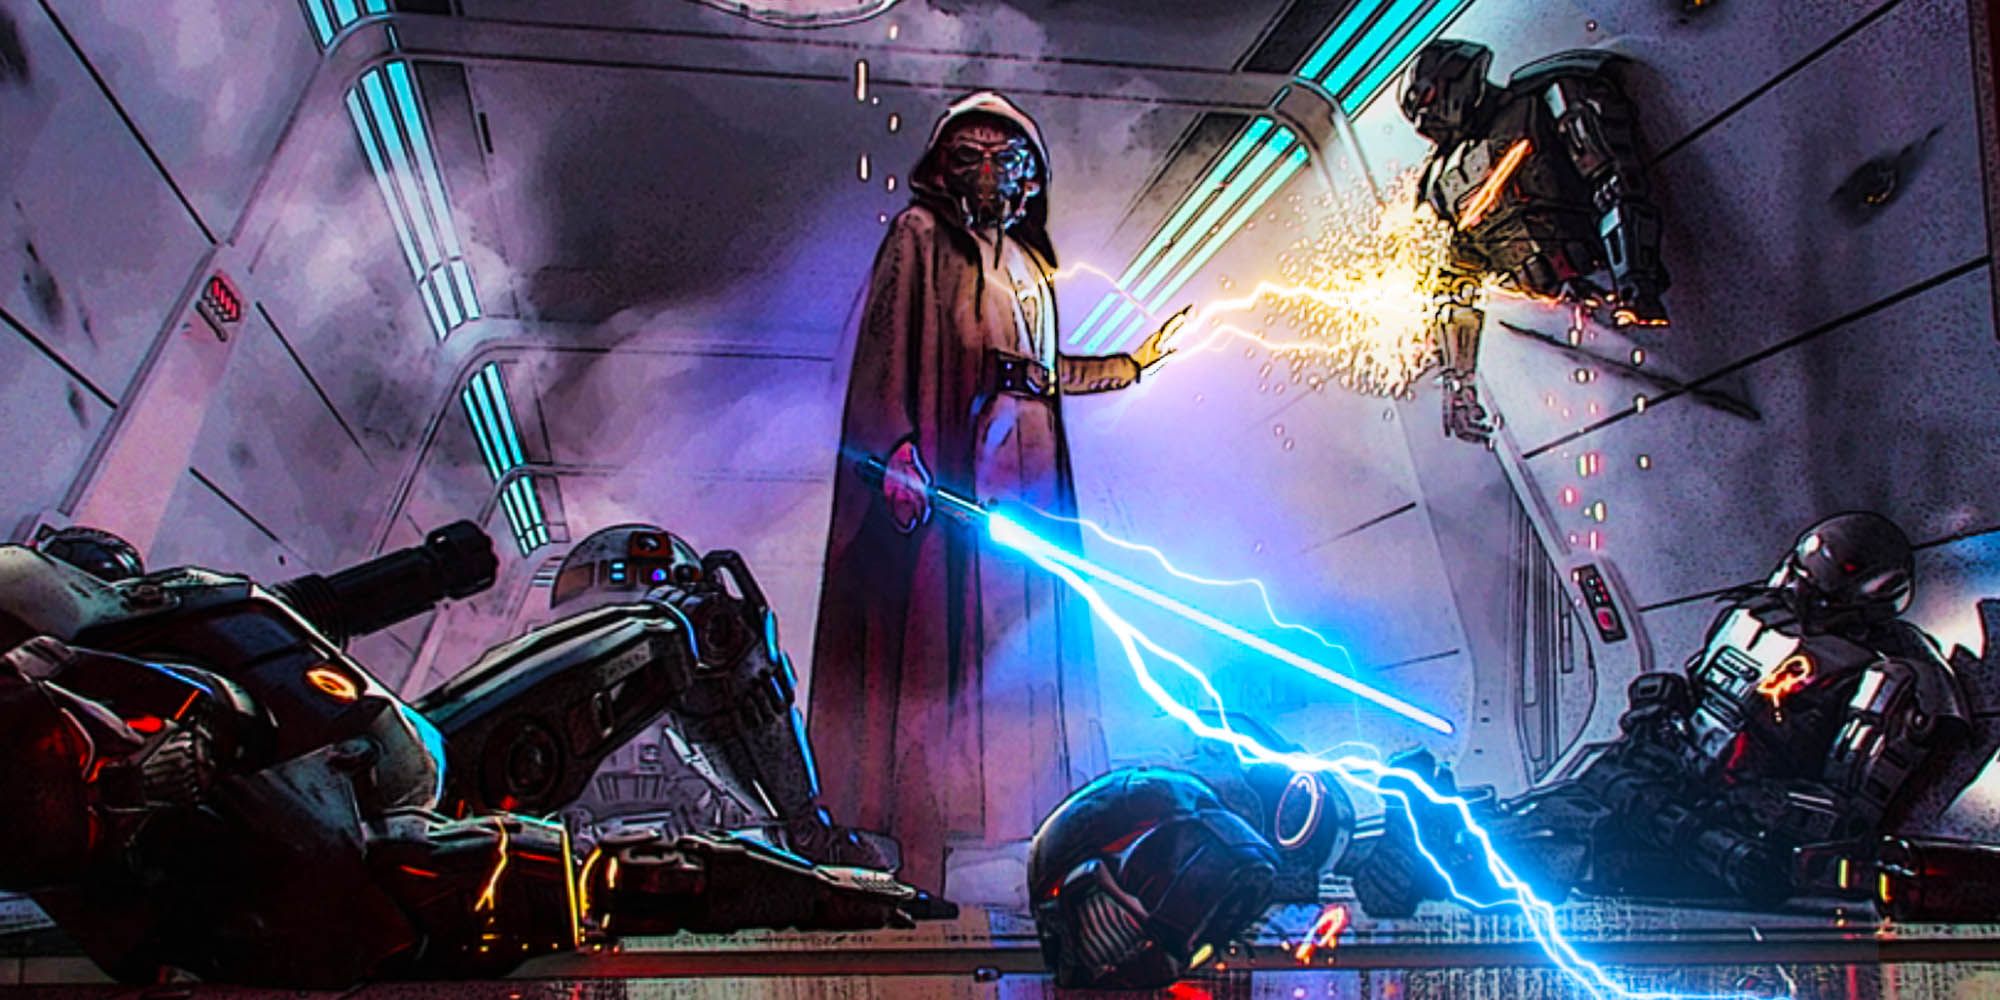 Force Lightning de Plo Koon podría cambiar la regla de poder del lado oscuro de Star Wars